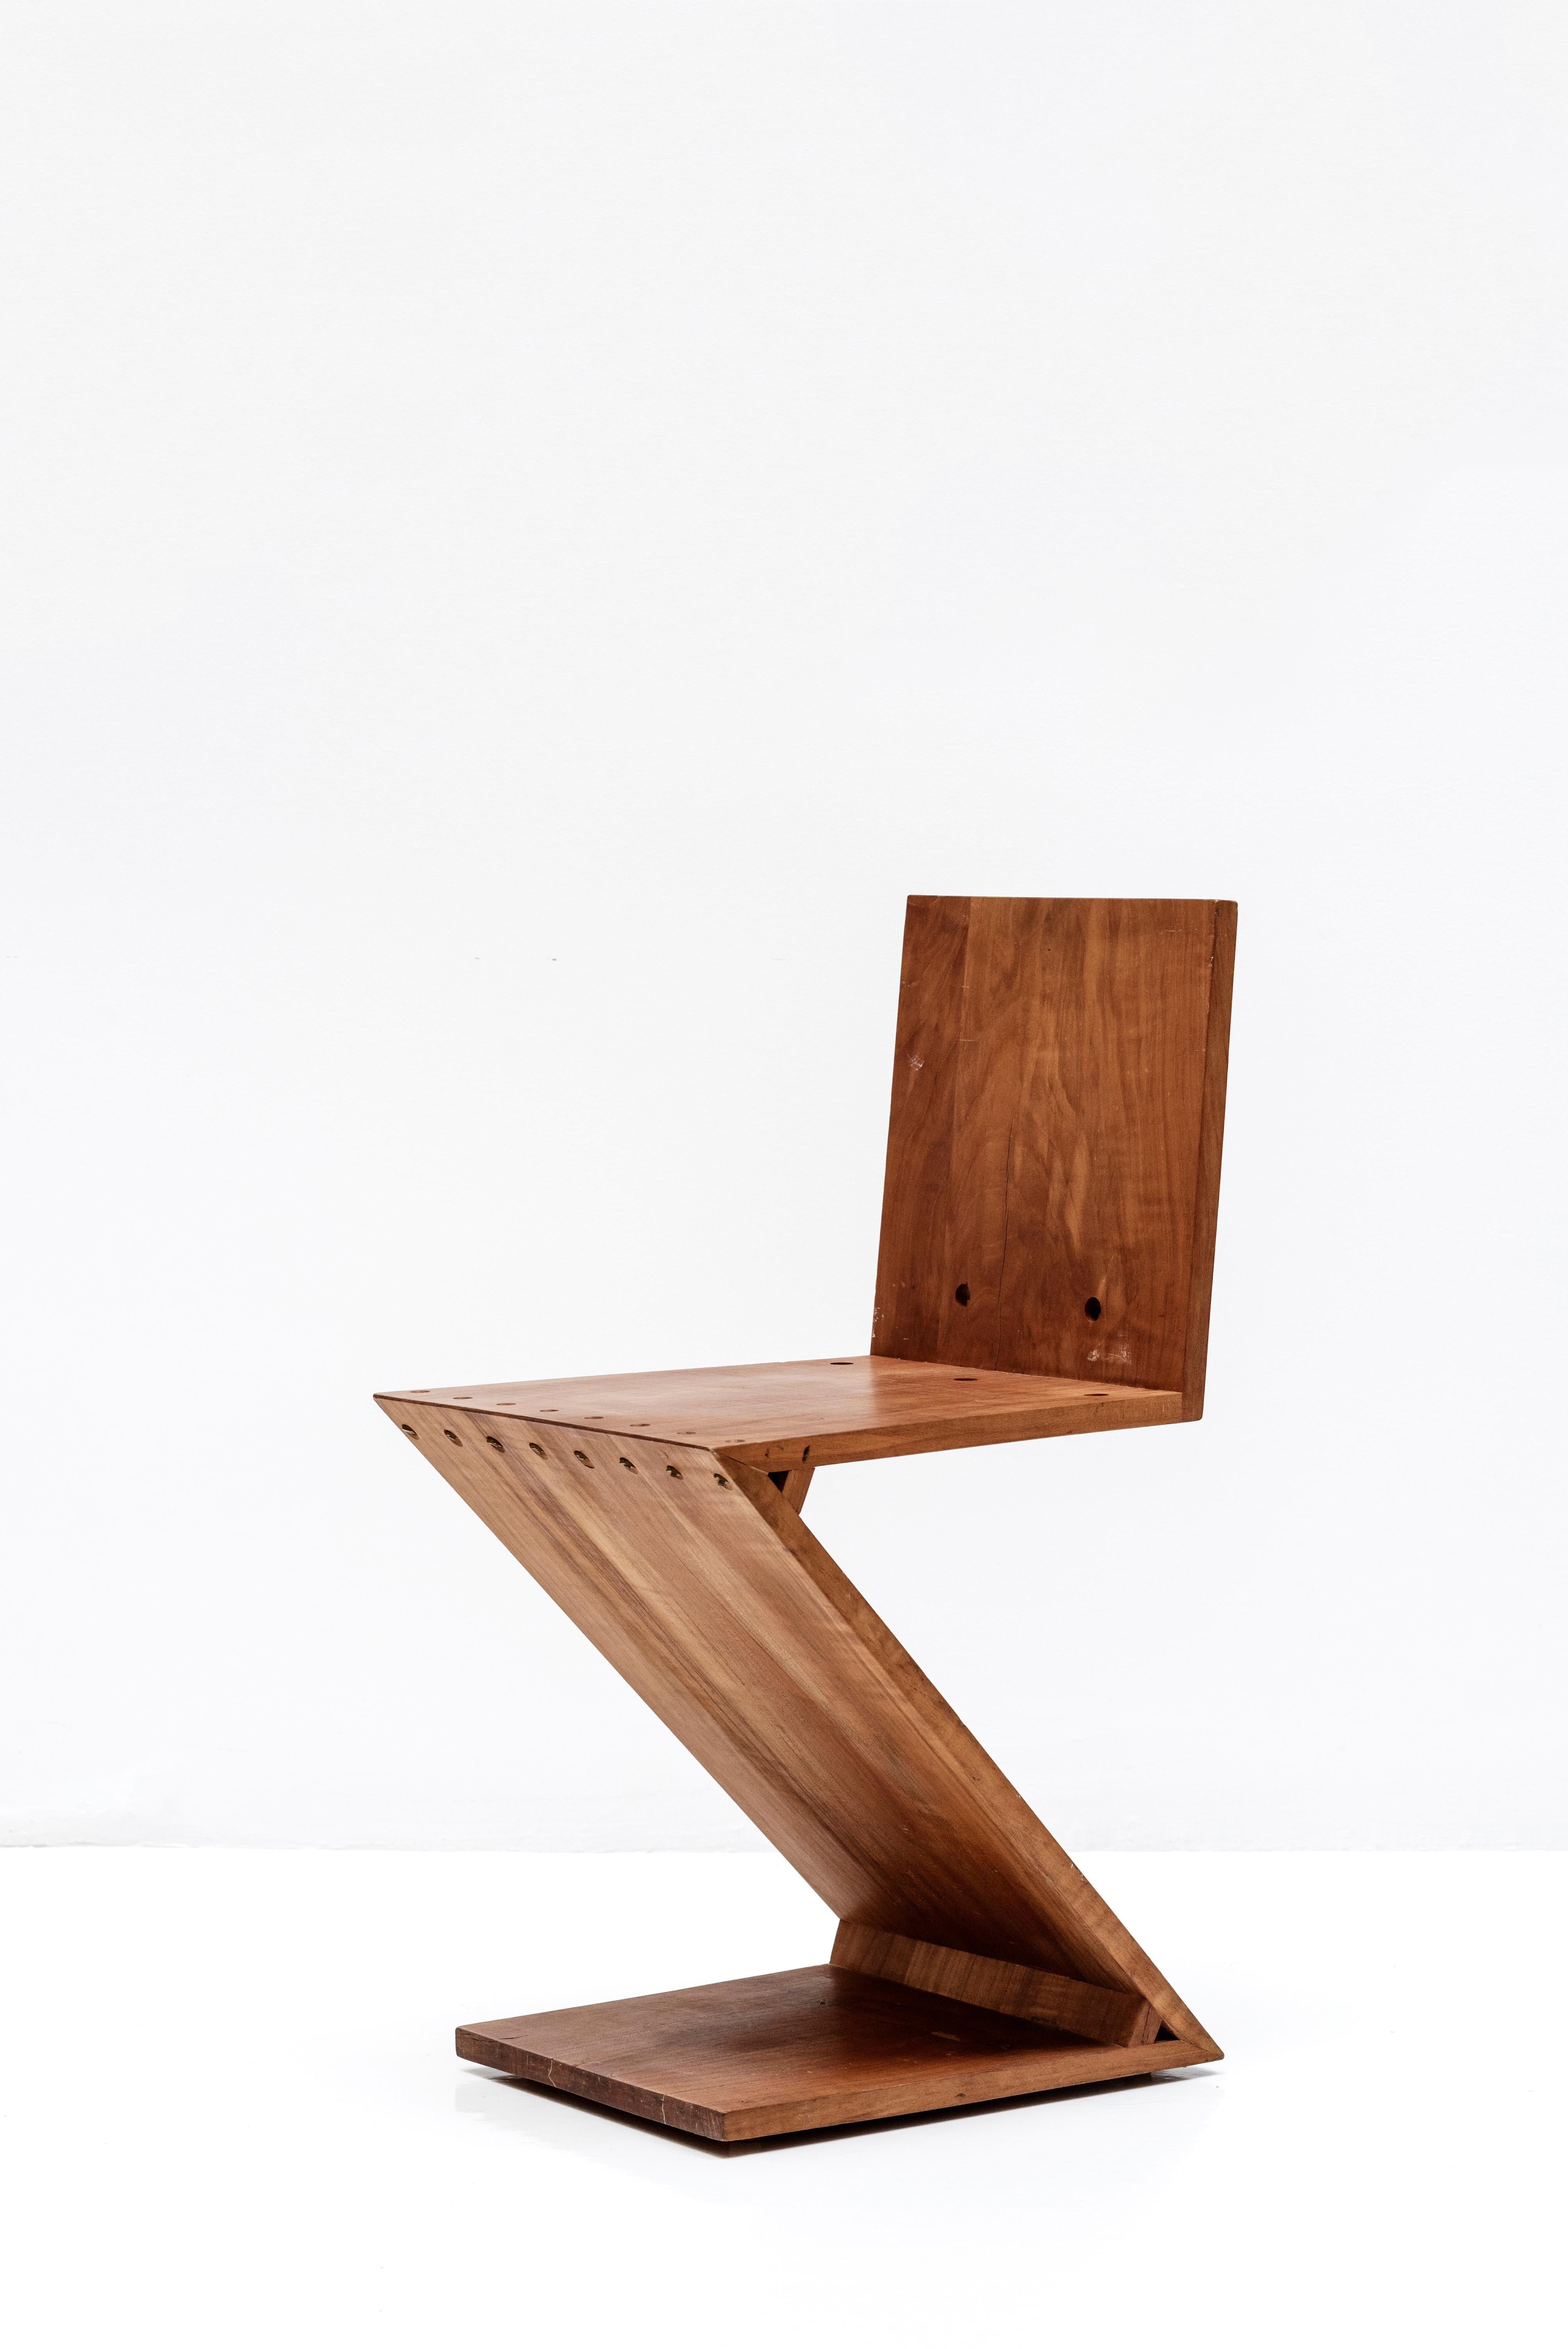 Zickzack-Stuhl von Gerrit Rietveld. Es ist ein minimalistisches Design ohne Beine, das aus 4 flachen Holzplatten besteht, die in einer Z-Form zusammengefügt sind. 
Hergestellt aus Ulme und Messing. 
Niederlande, um 1960. 
(1934 von Gerrit